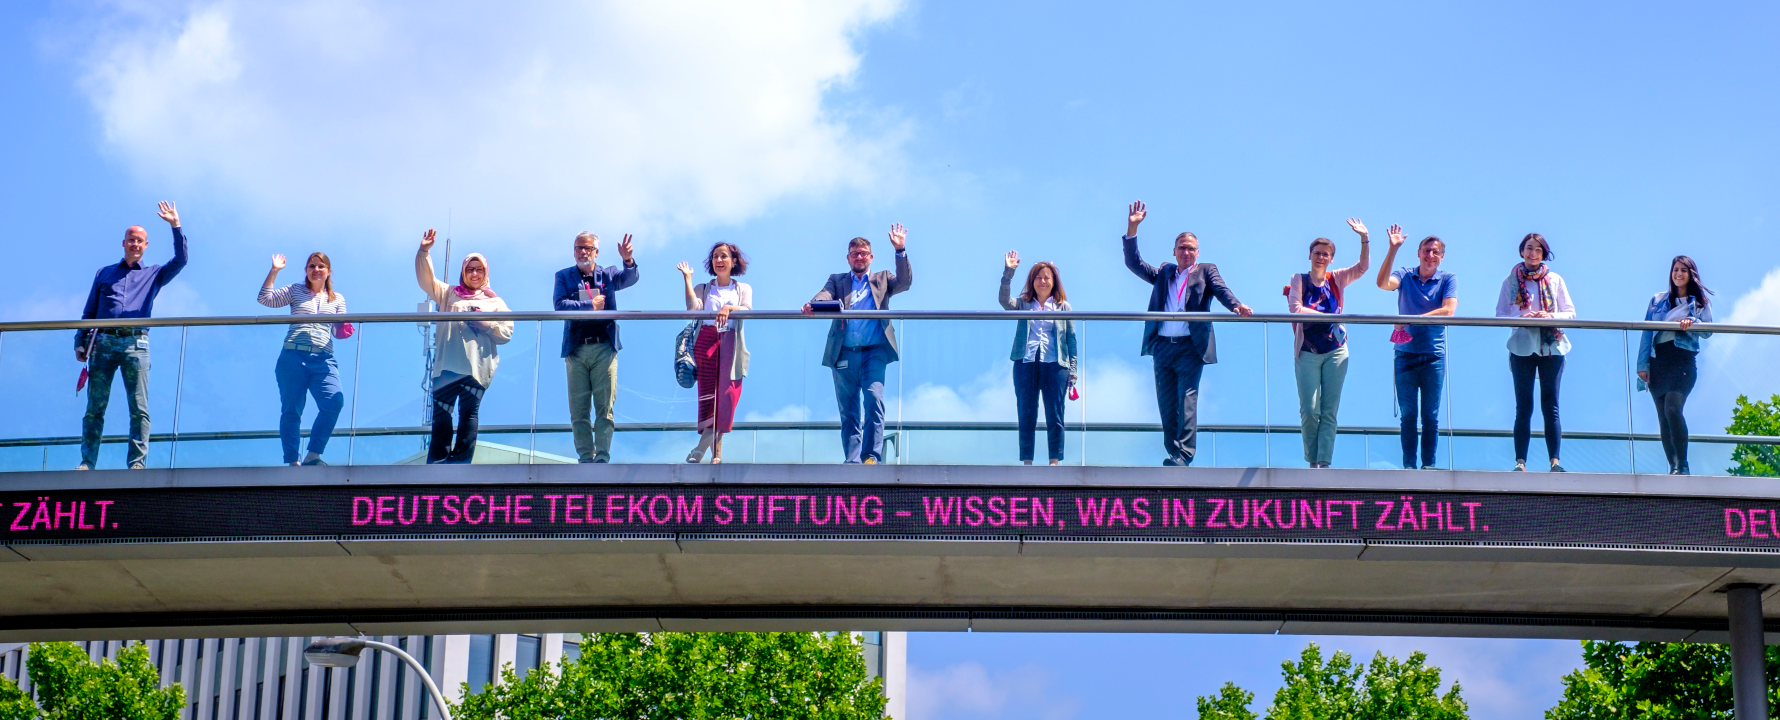 Team der Deutsche Telekom Stiftung